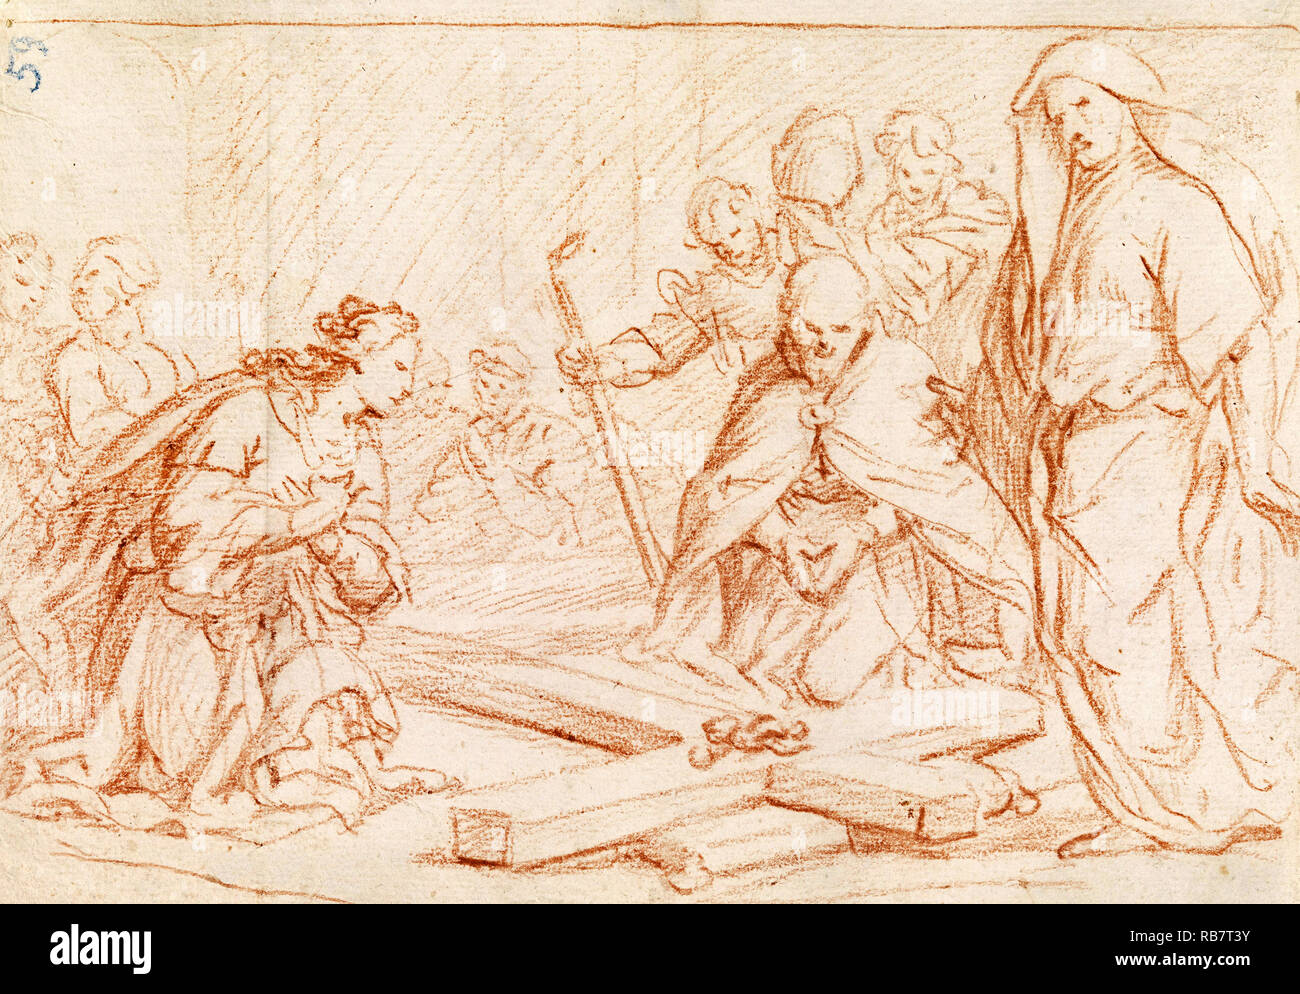 Luca Giordano, trouver de la Croix, vers 1650 craie rouge sur papier crème, dessin, Cooper Hewitt, Smithsonian Design Museum, USA. Banque D'Images